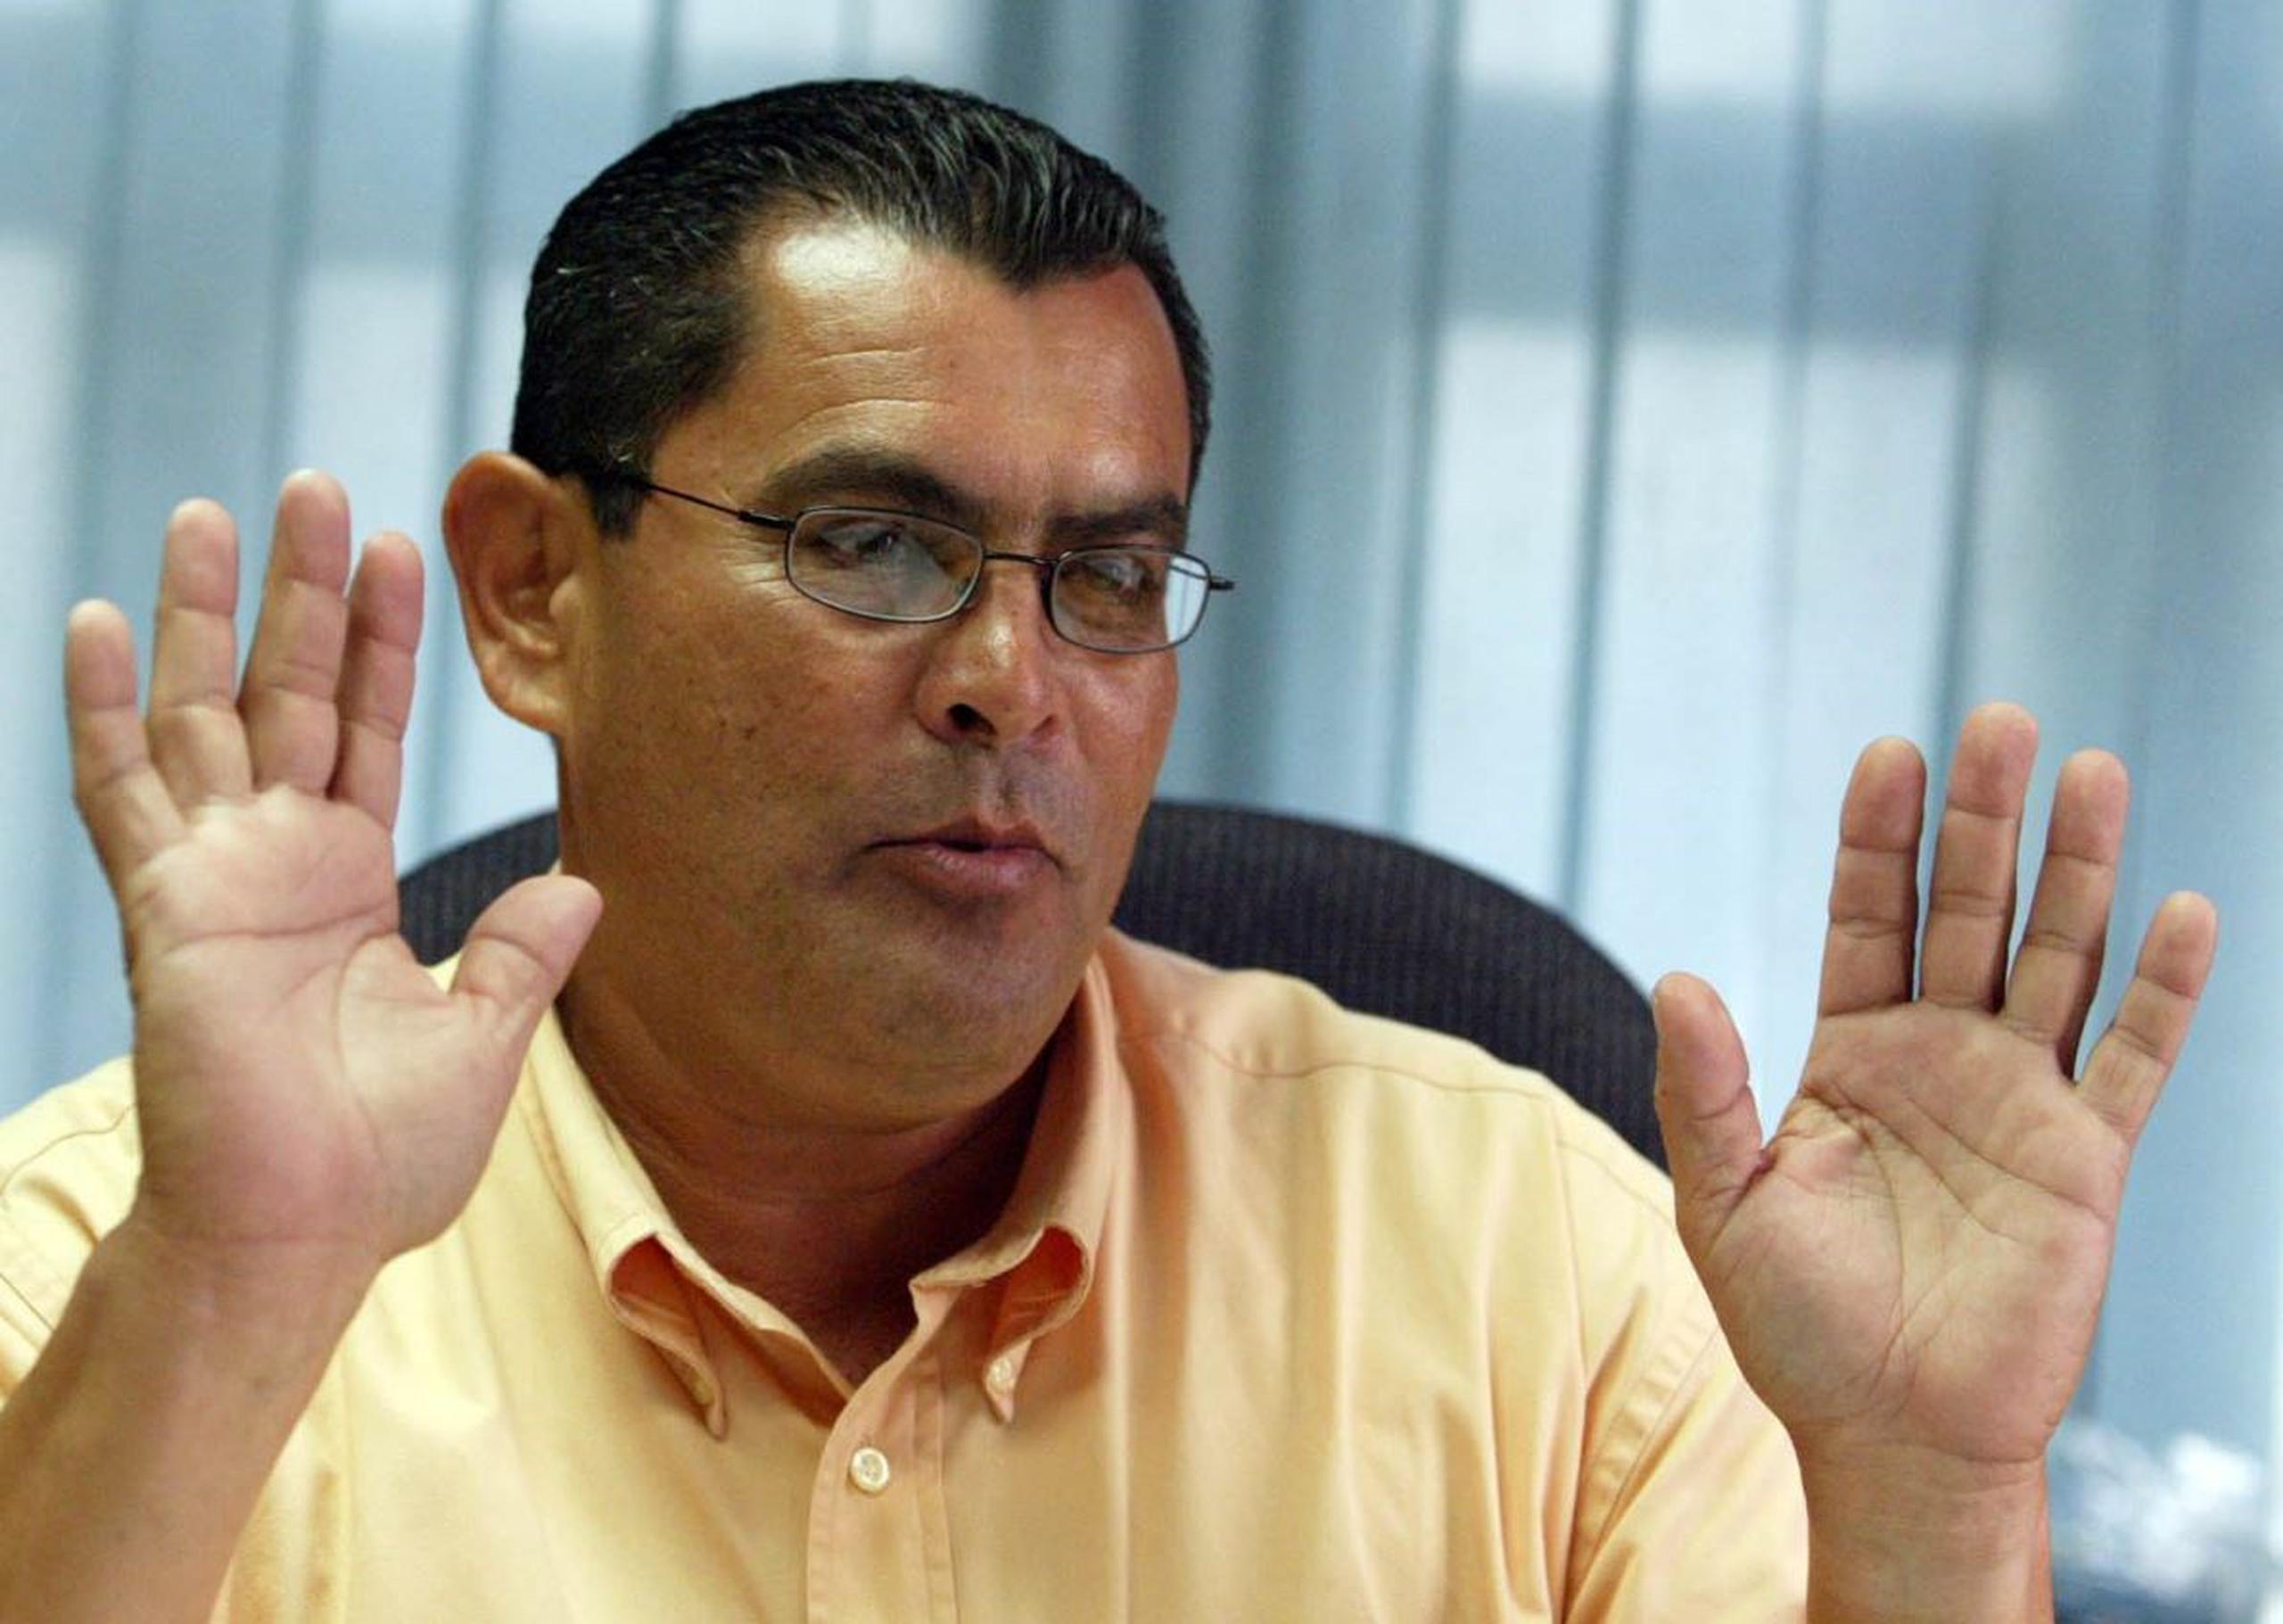 El exalcalde de Ciales Luis "Rolan" Maldonado afirma que será reelecto porque sus compueblanos reconocen que "prometí y cumplí". (Archivo / GFR Media)